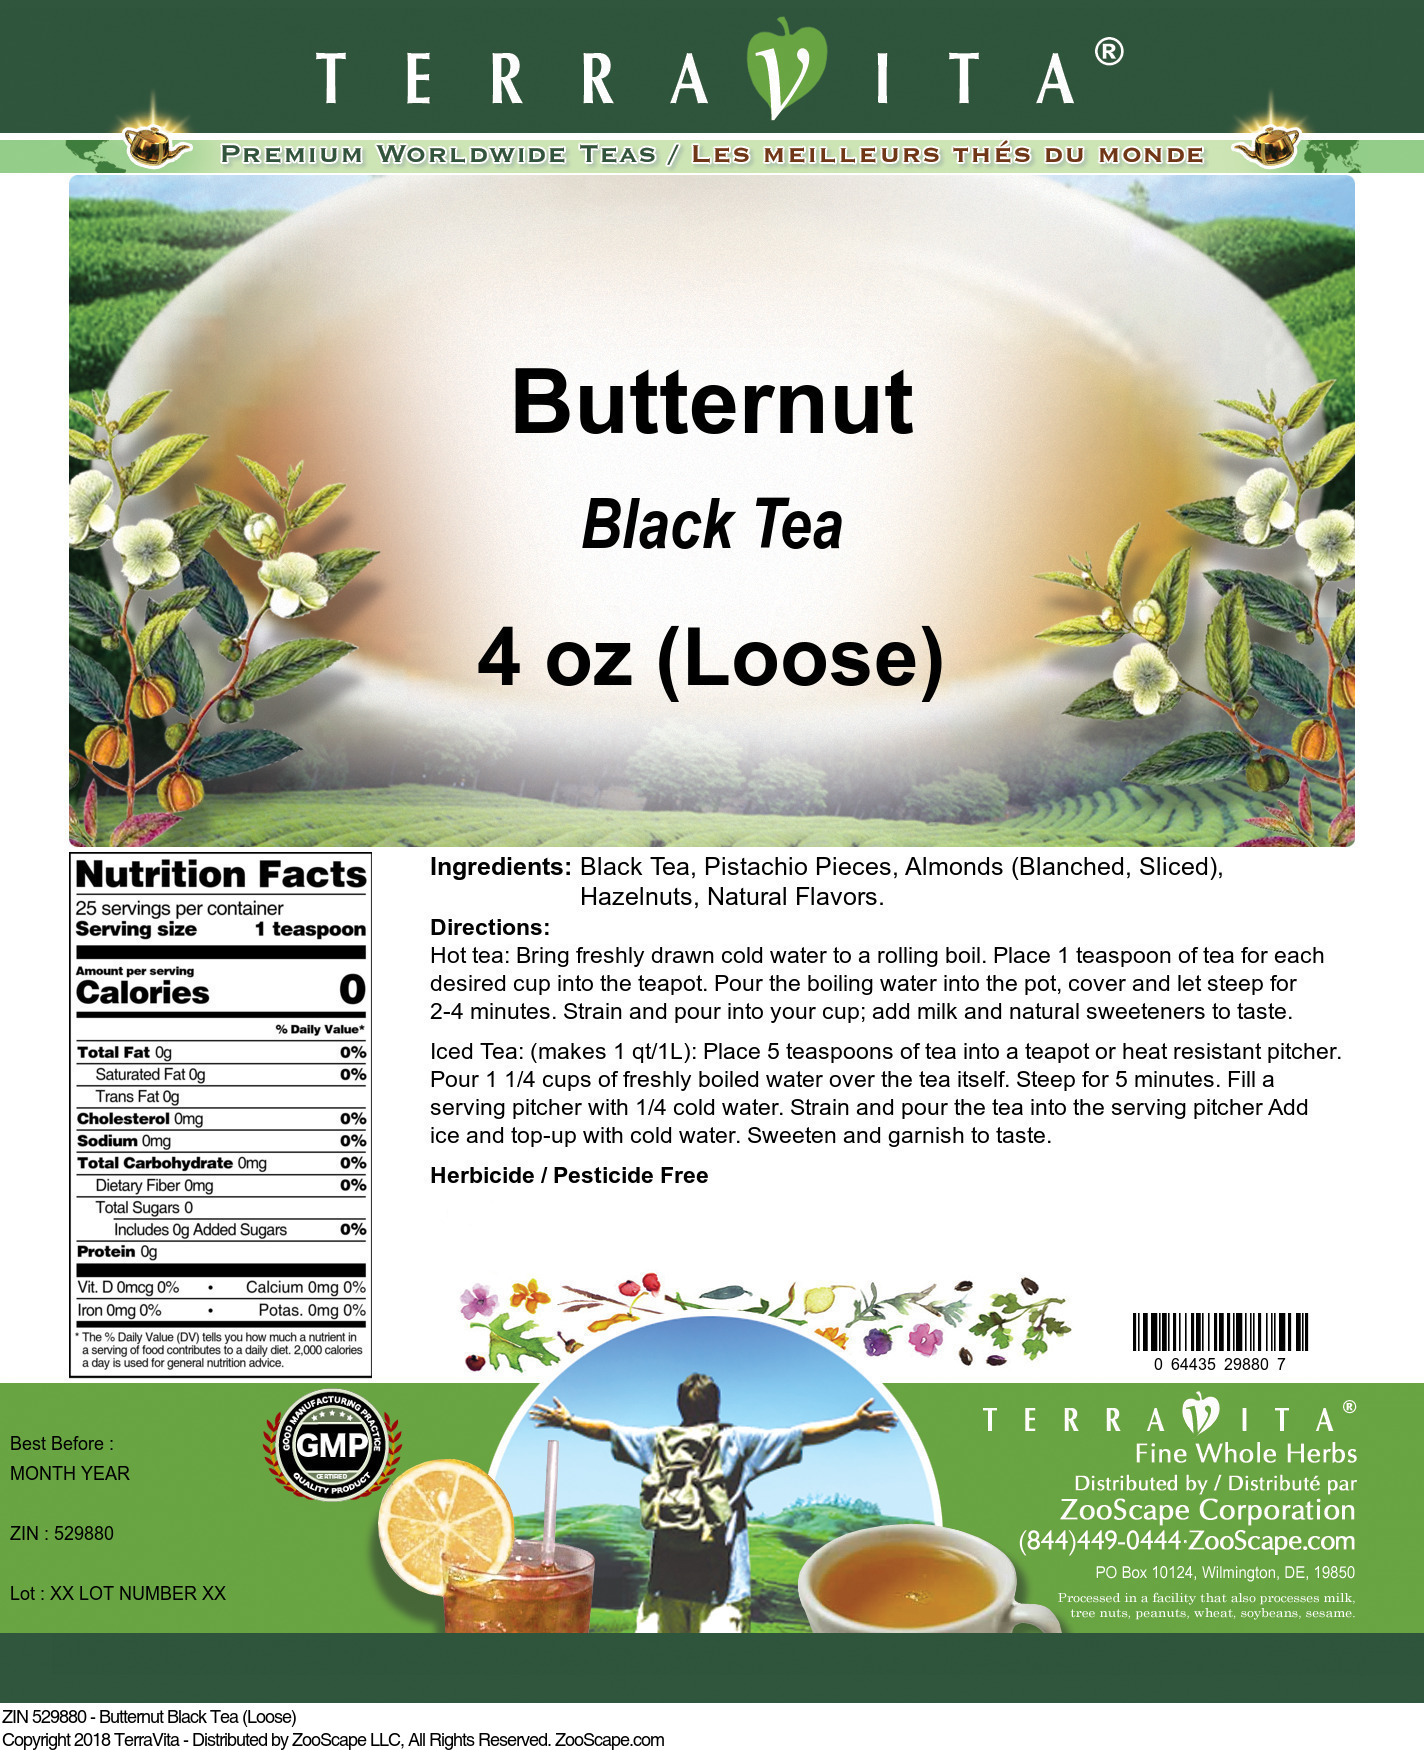 Butternut Black Tea (Loose) - Label